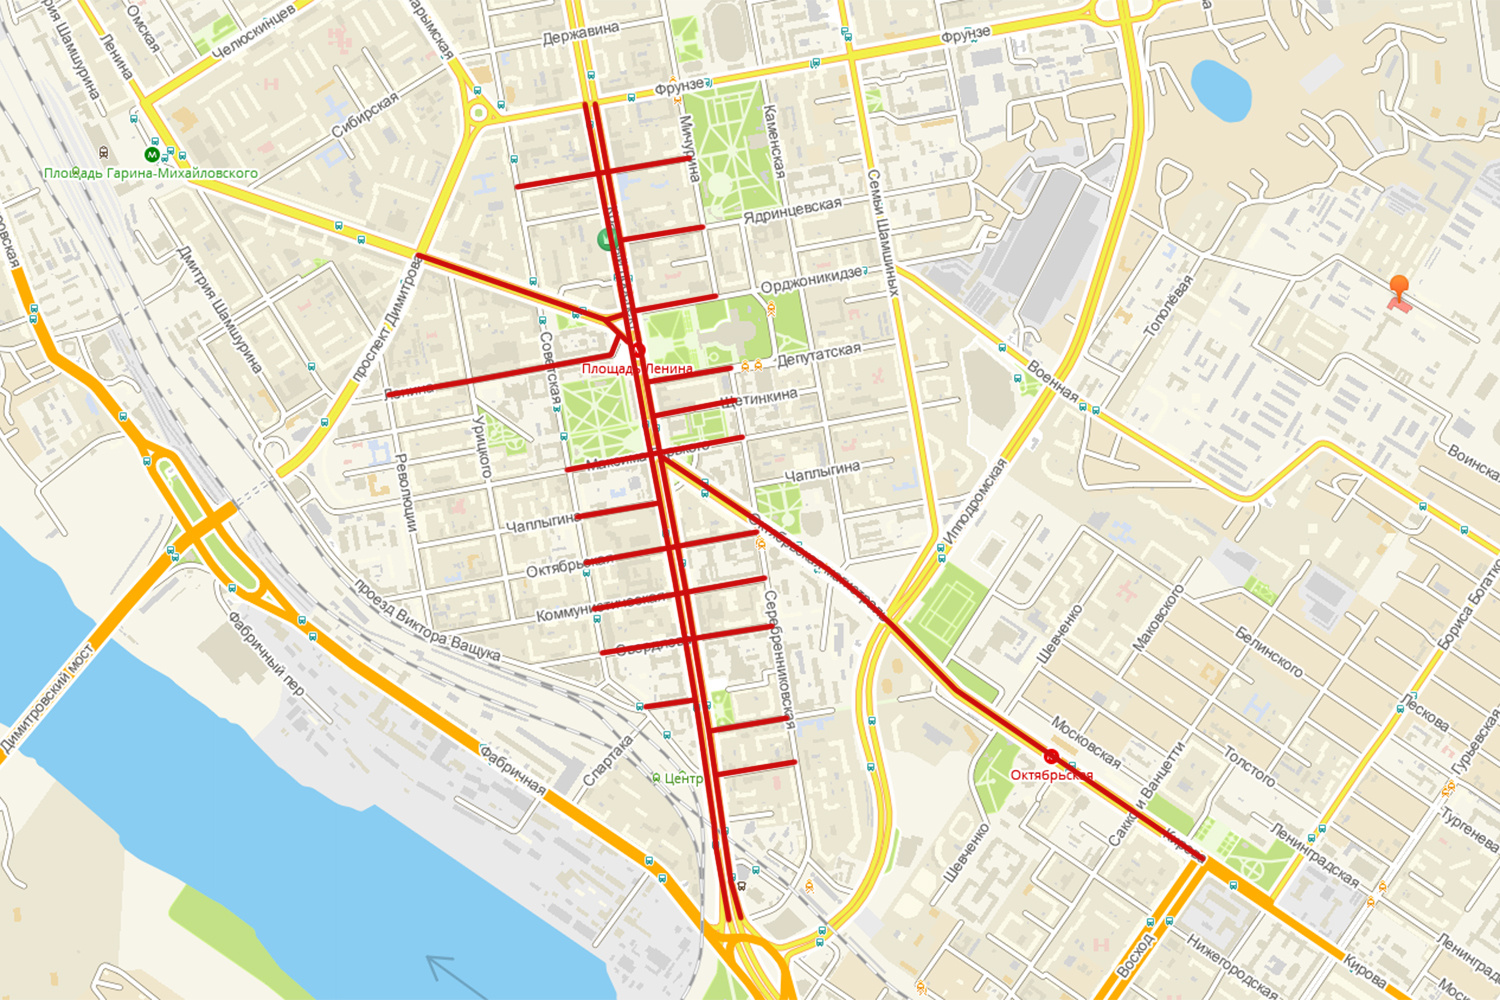 Перекрытия всех улиц, кроме улицы Ленина, будут с 9 до 22 часов 16 сентября. Перекрытие улицы Ленина — с 19:30 15 сентября до 05:00 17 сентября